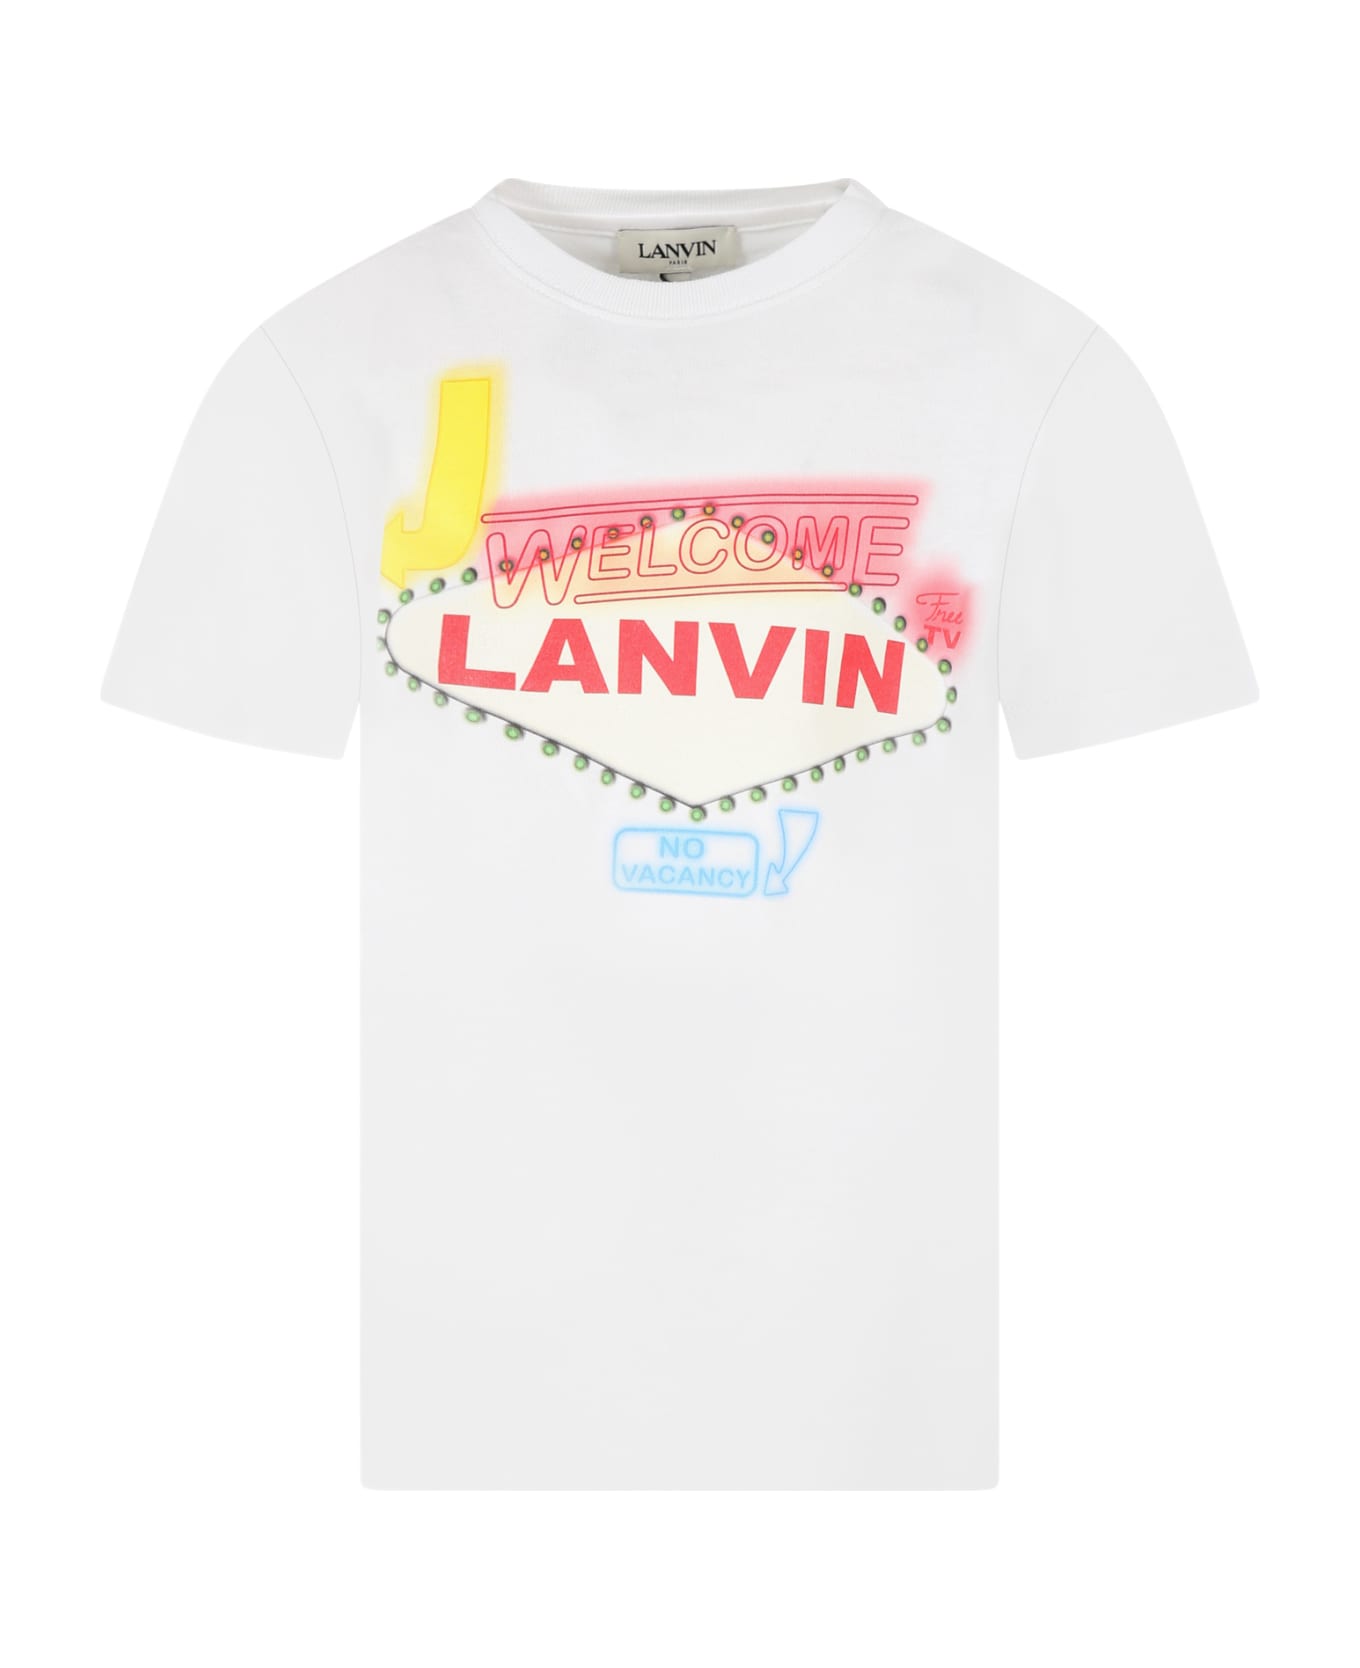 Lanvin White T-shirt For Kids - White